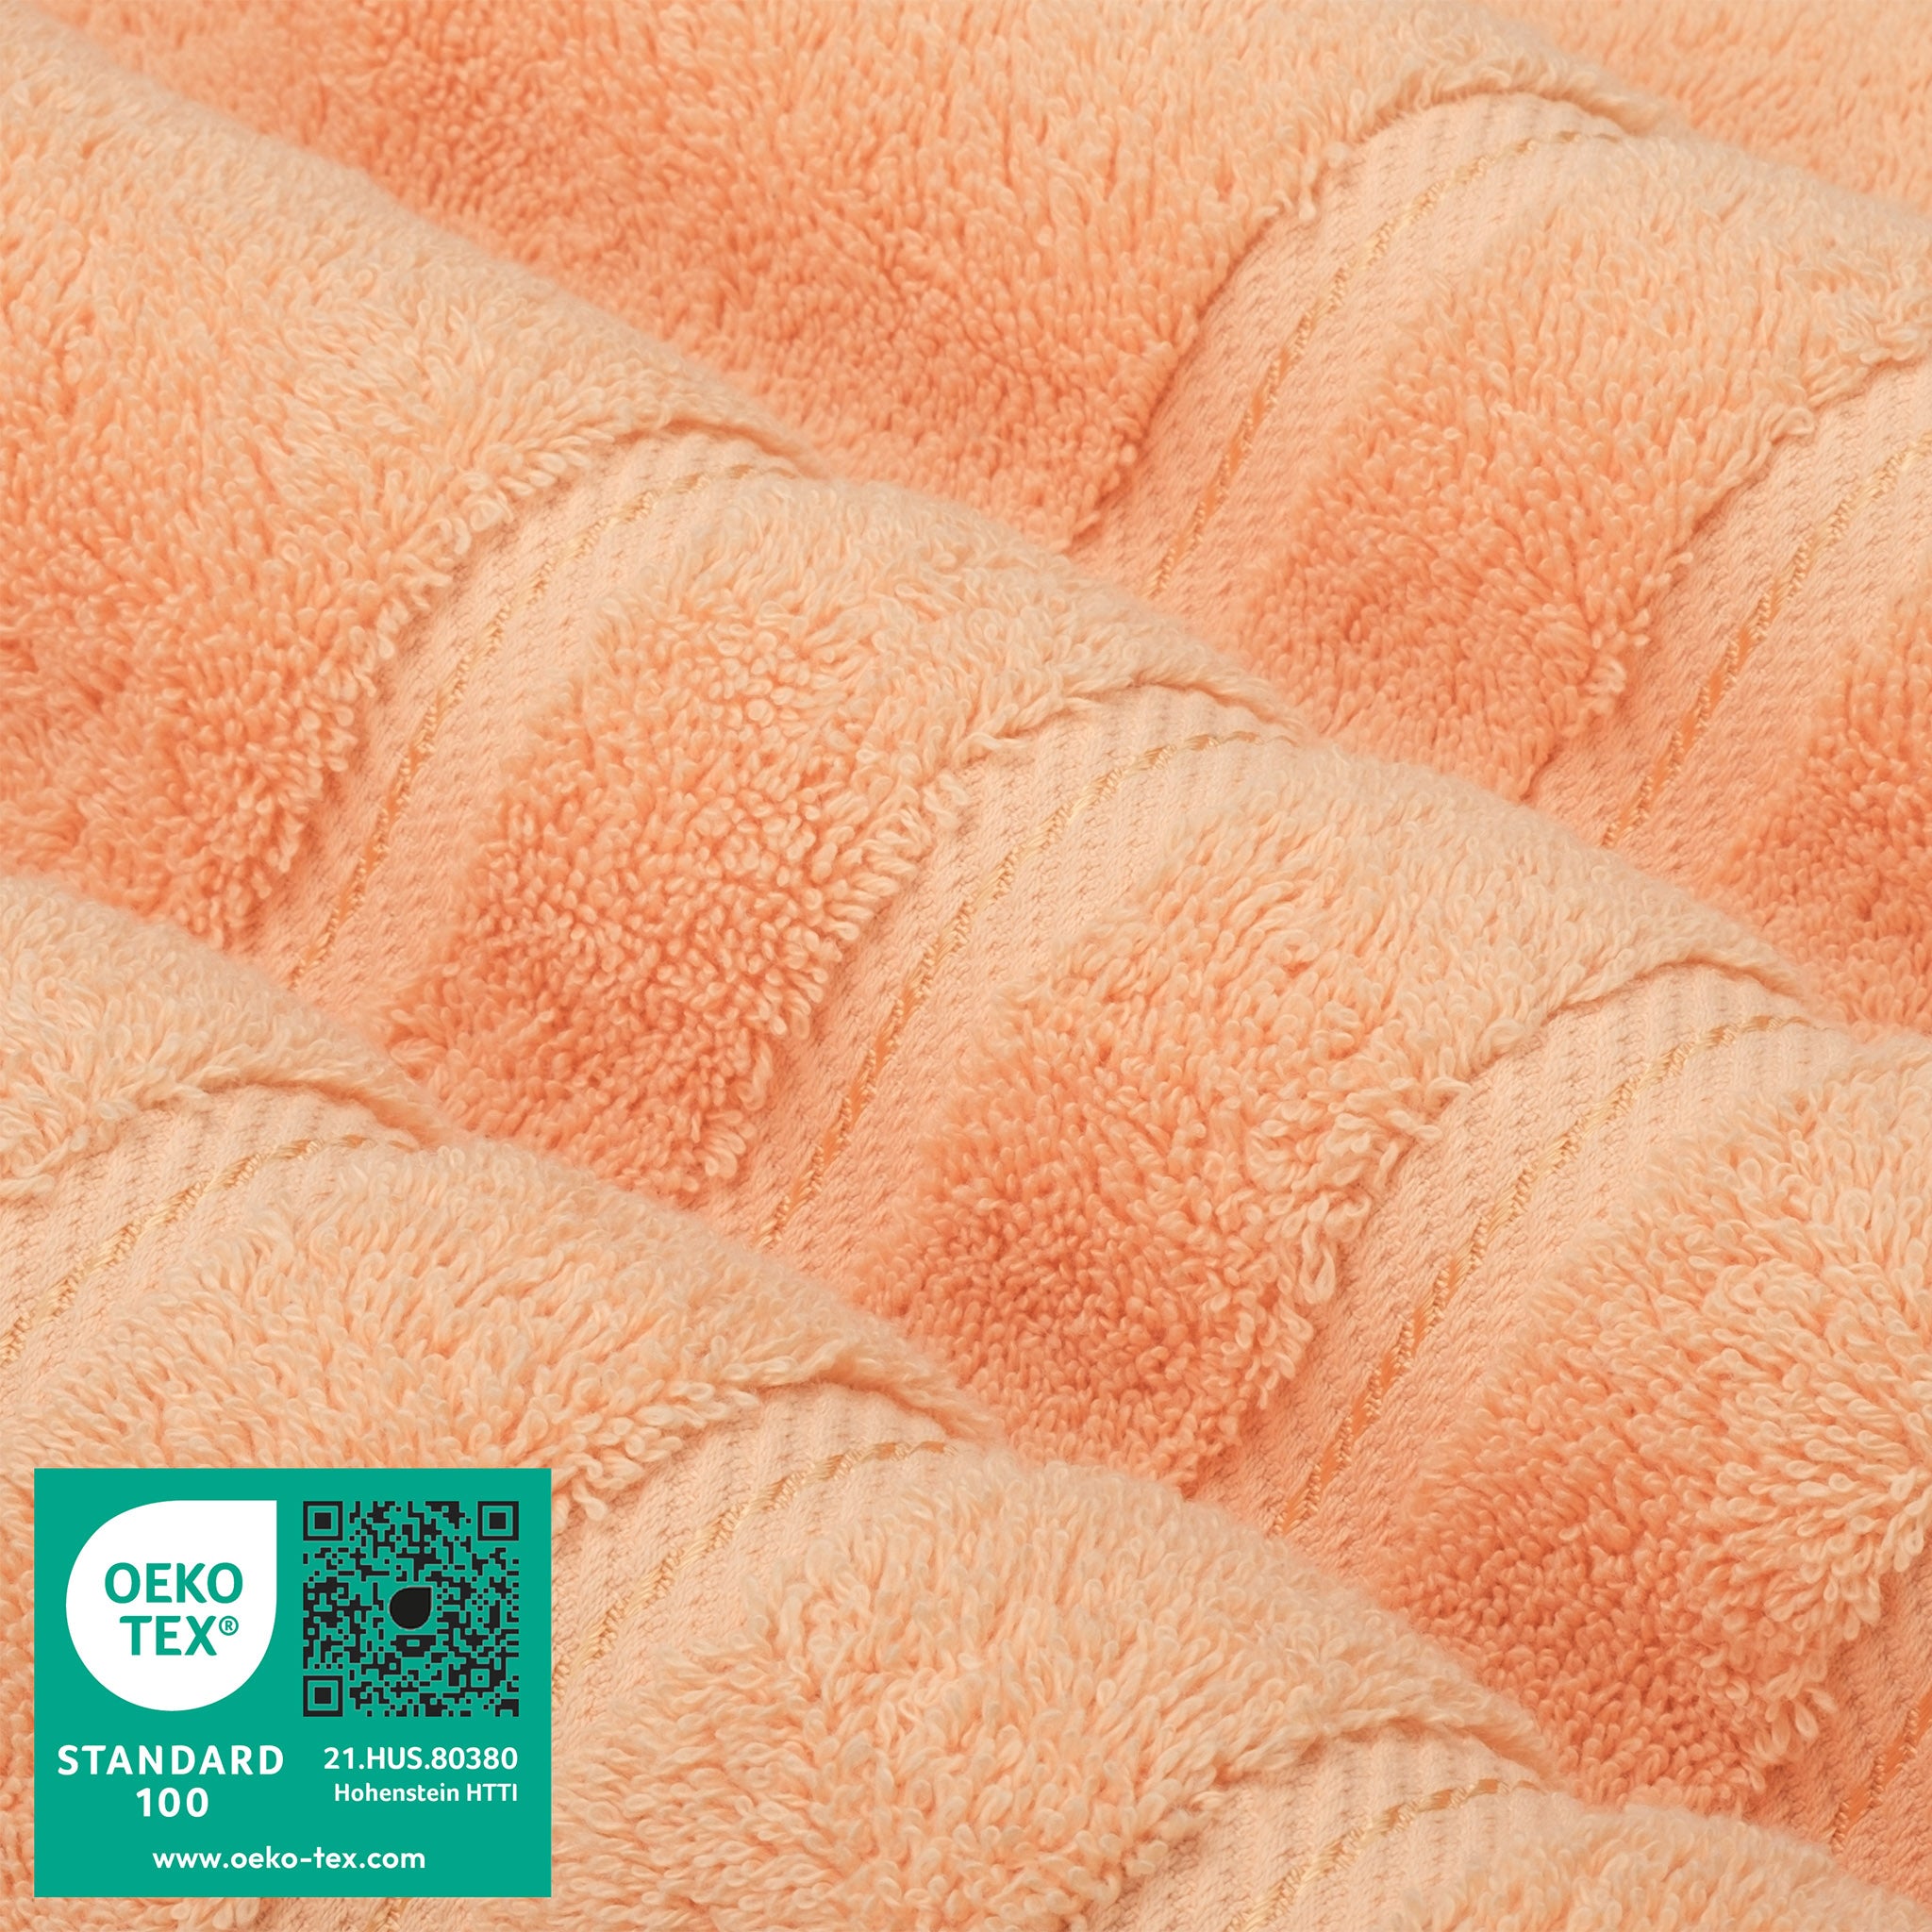 American Soft Linen 35x70 Inch 100% Turkish Cotton Jumbo Bath Sheet malibu-peach-2